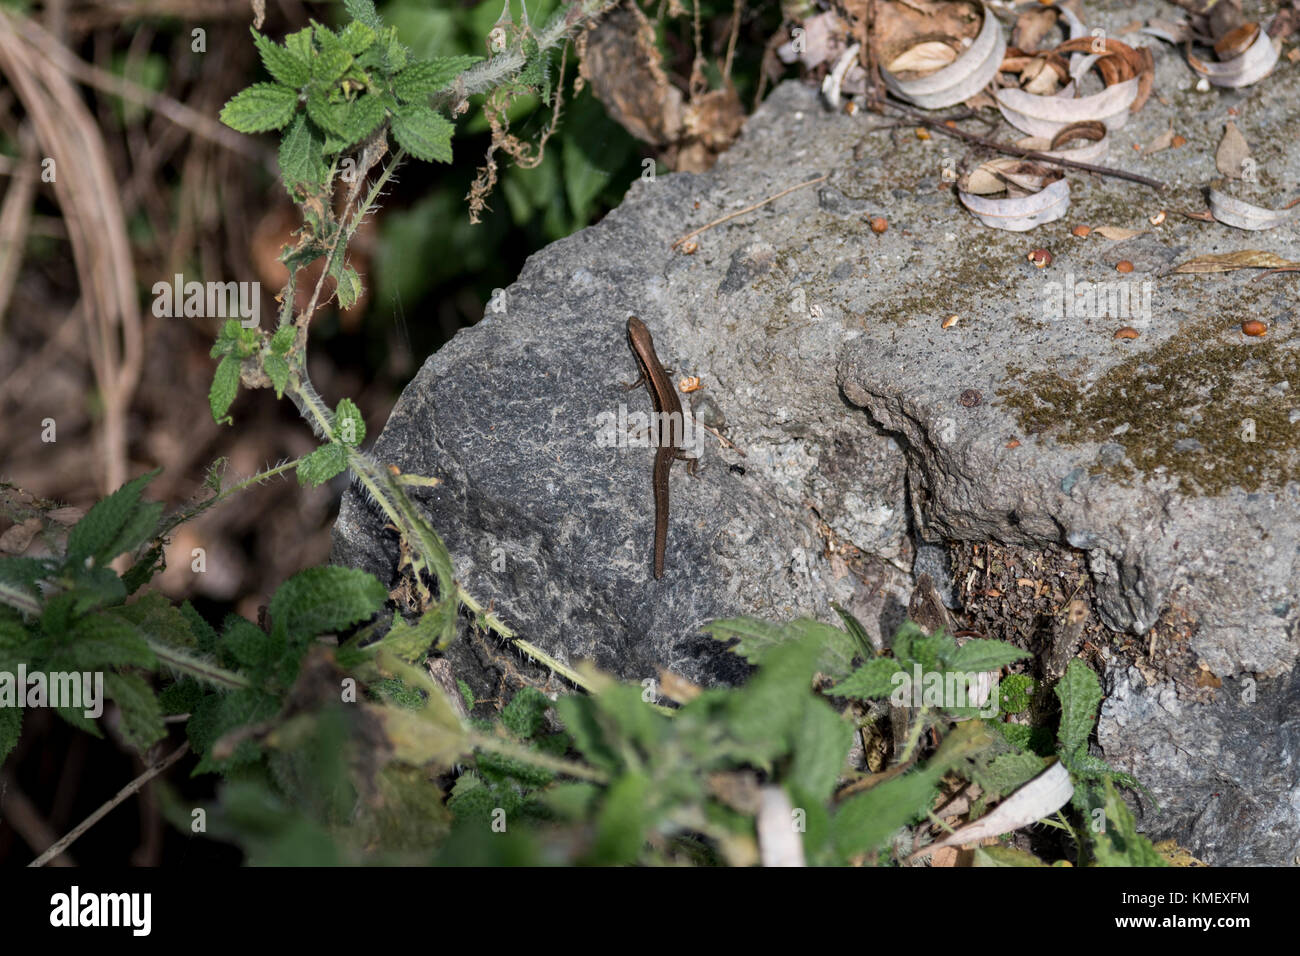 Ein Reptil auf einem Stein in einer abgelegenen Gegend in Indien Stockfoto